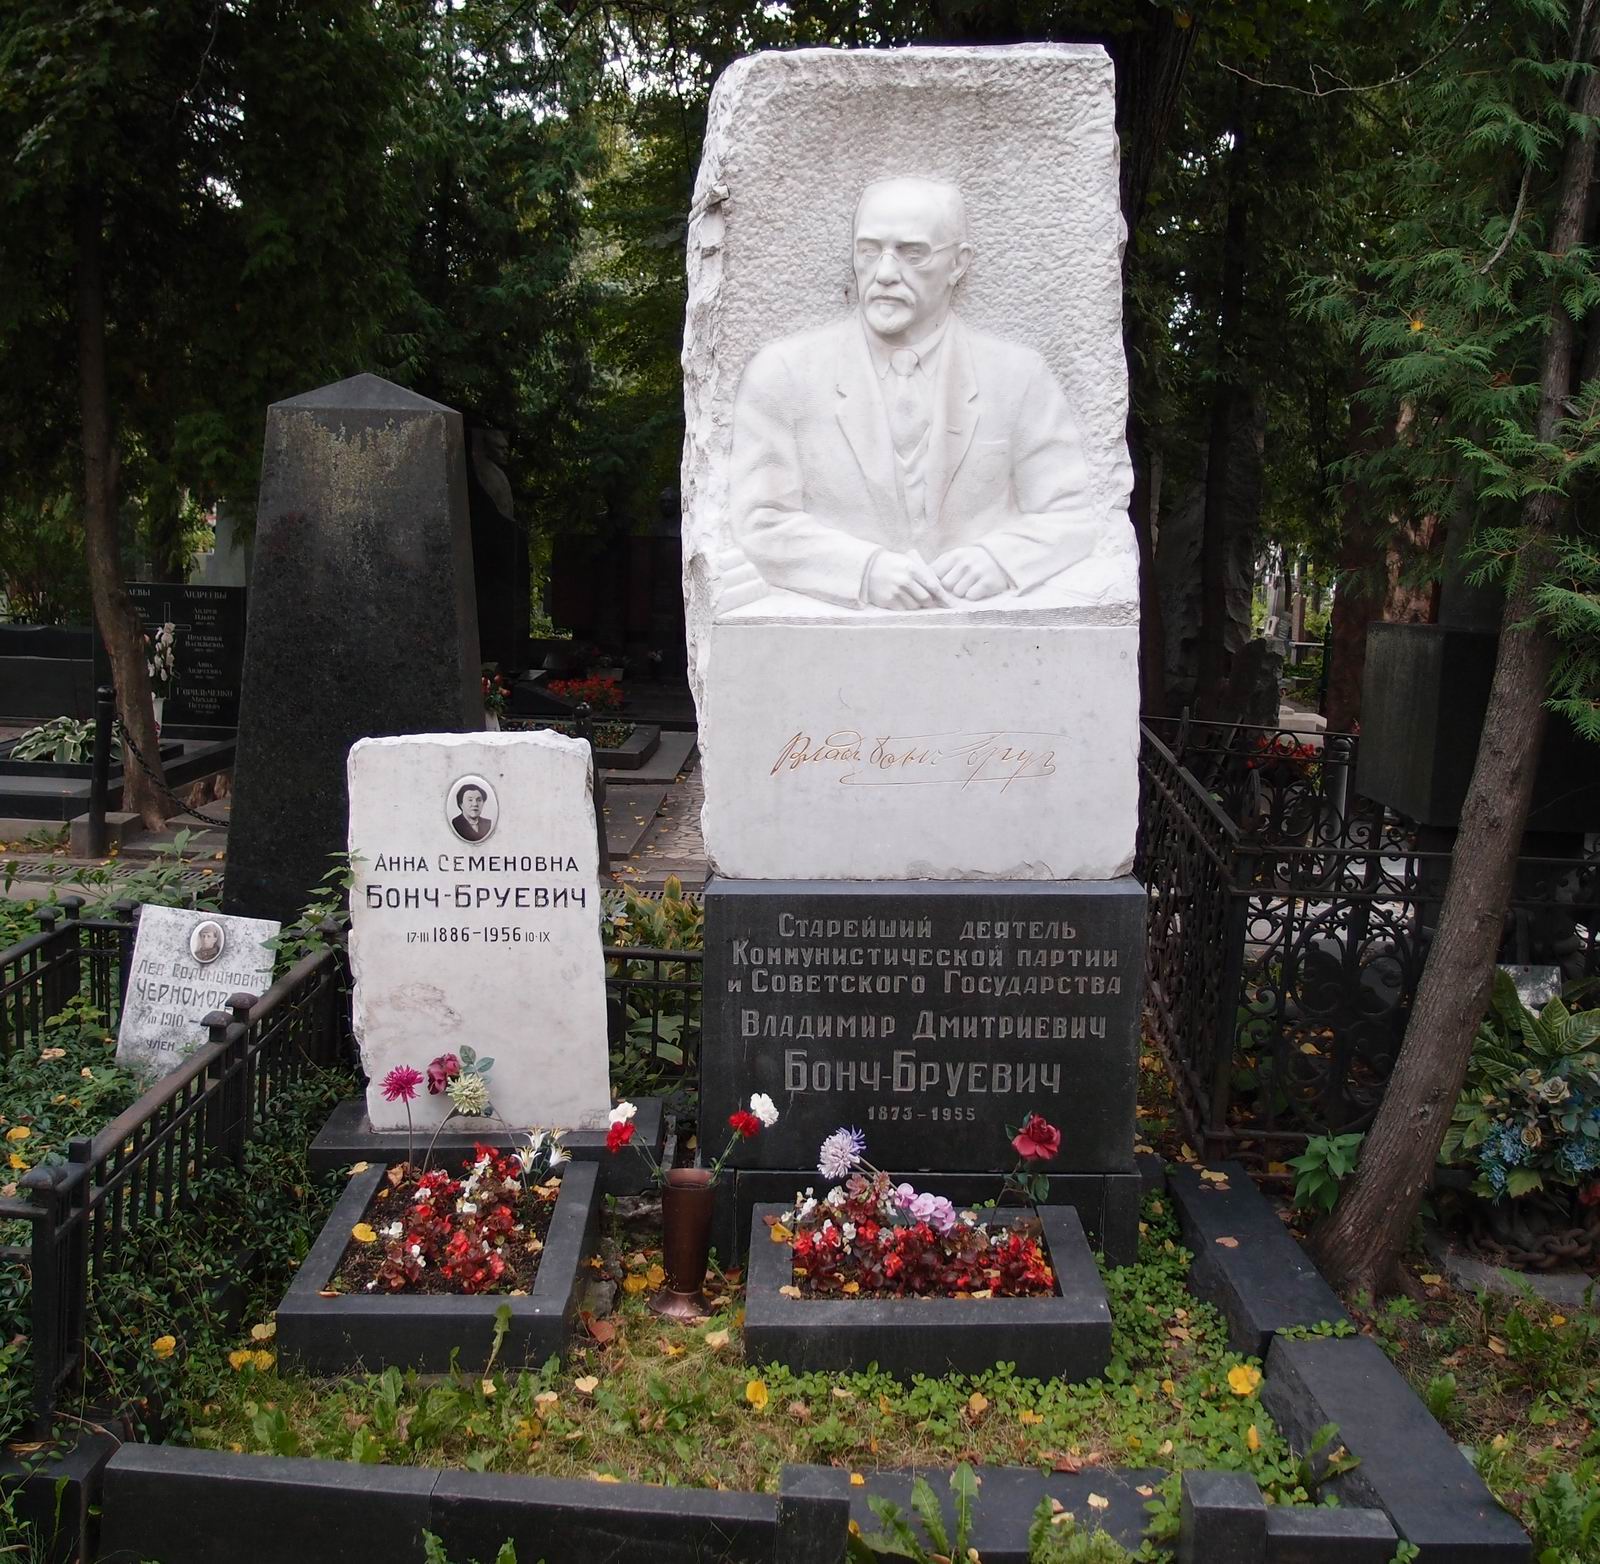 Памятник на могиле Бонч-Бруевича В.Д. (1873–1955), ск. Б.Королёв, на Новодевичьем кладбище (1–45–2). Нажмите левую кнопку мыши, чтобы увидеть фрагмент памятника крупно.